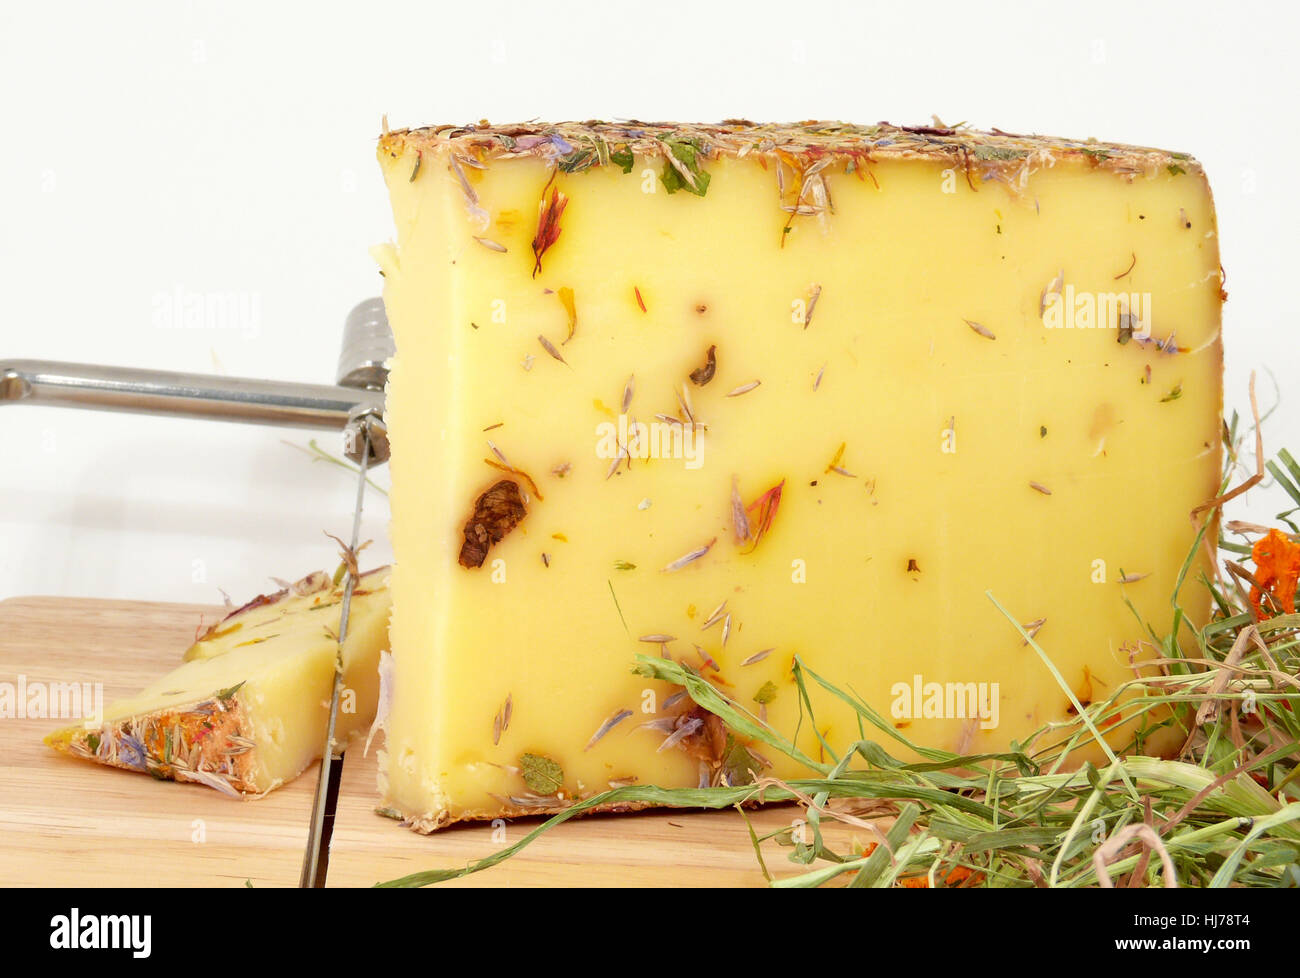 allgu wildflowers cheese Stock Photo